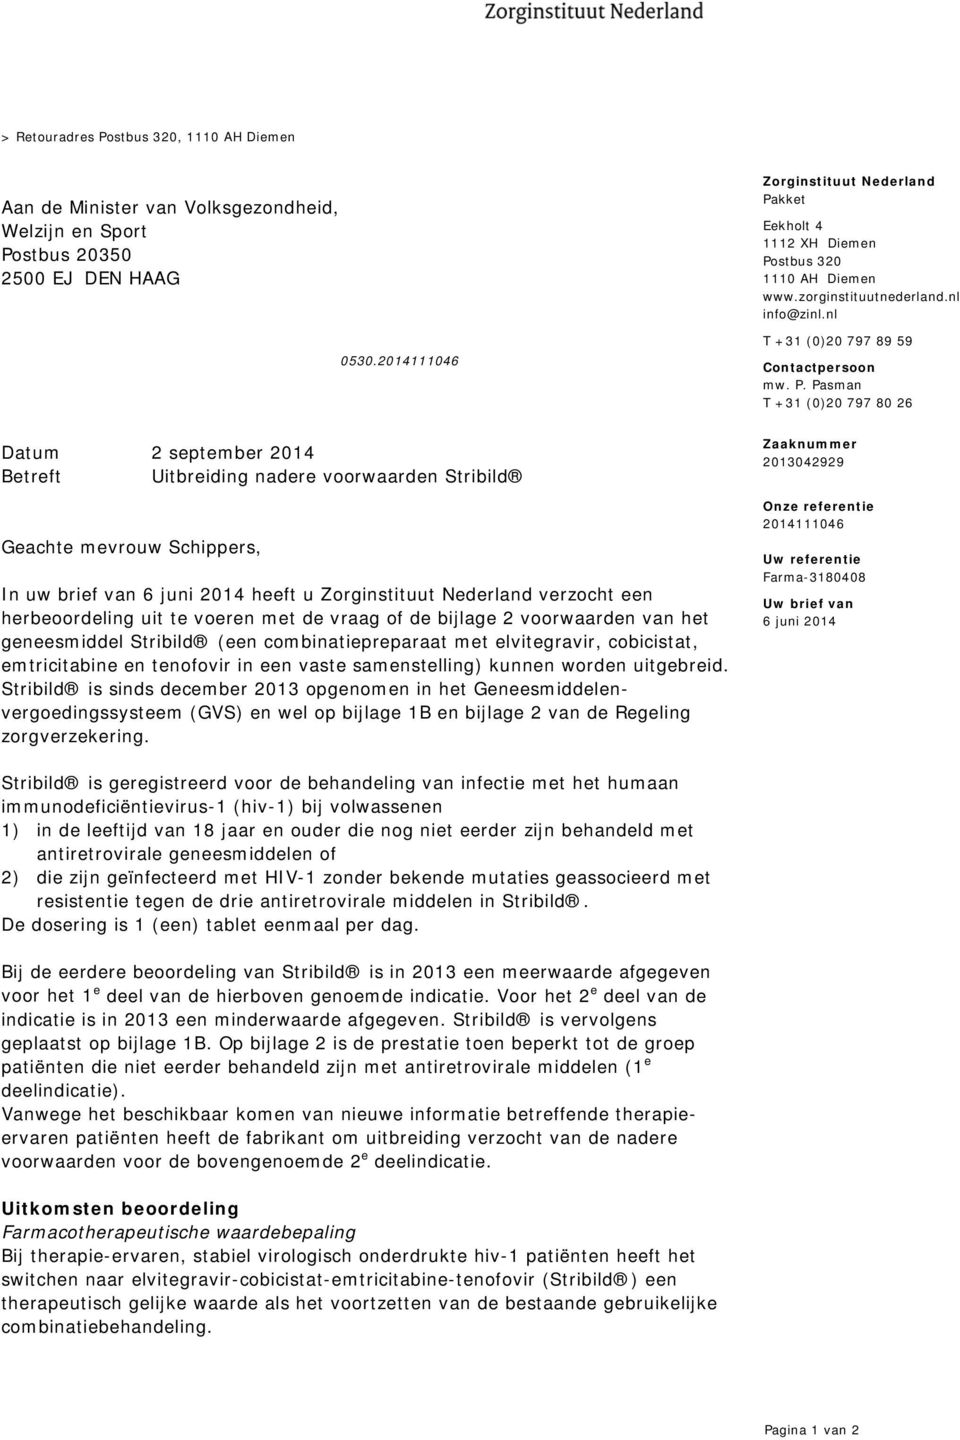 Pasman T +31 (0)20 797 80 26 Datum 2 september 2014 Betreft Uitbreiding nadere voorwaarden Stribild Geachte mevrouw Schippers, In uw brief van 6 juni 2014 heeft u Zorginstituut Nederland verzocht een